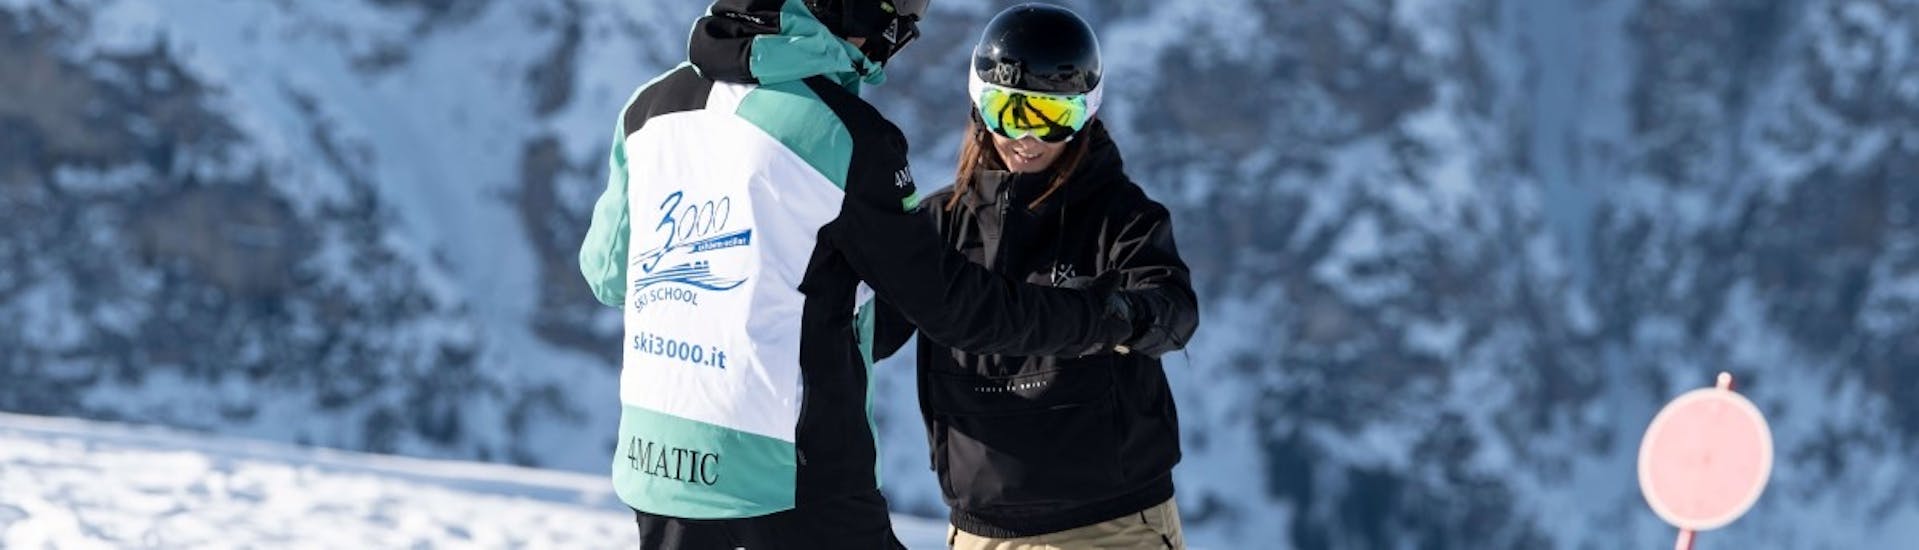 Snowboarder unterstützen sich einander während Privater Snowboardkurs für Kinder & Erwachsene aller Levels mit Skischule Schlern 3000.